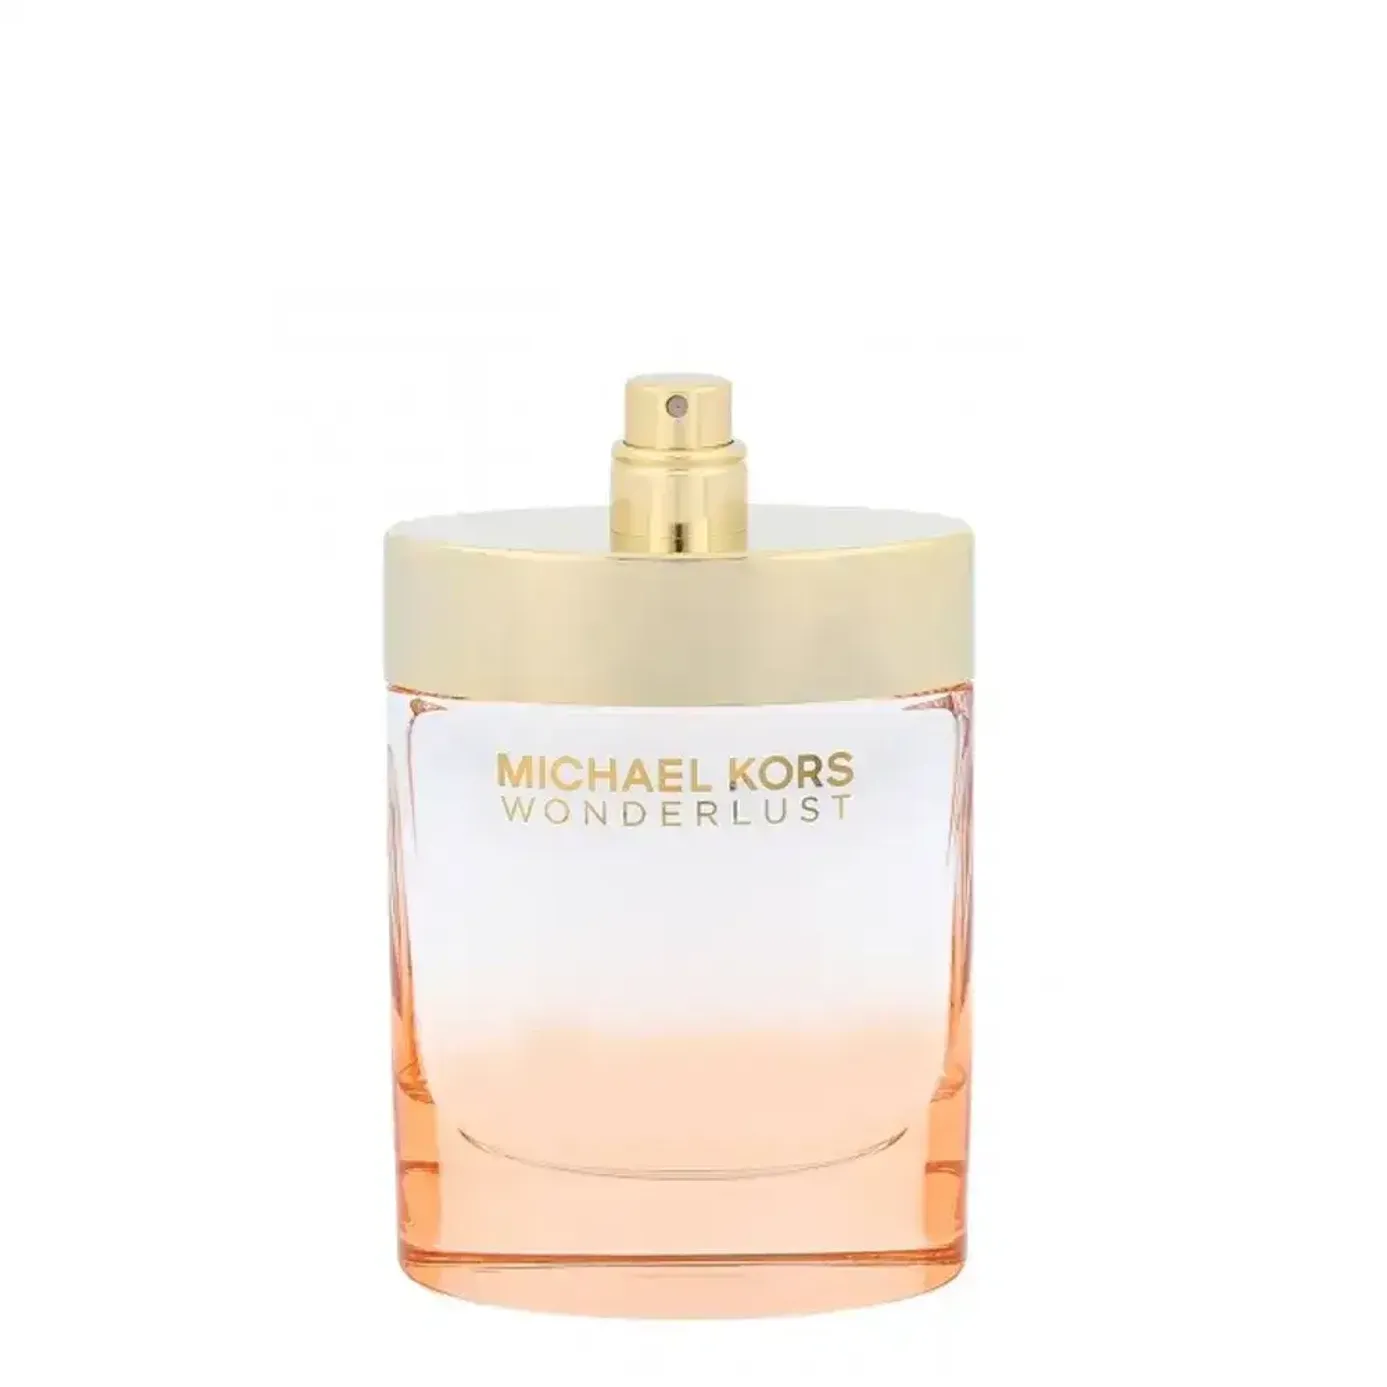 Michael Kors Wonderlust by Michael Kors 34 oz EDP Perfume for Women New In  Box 22548366448  eBay